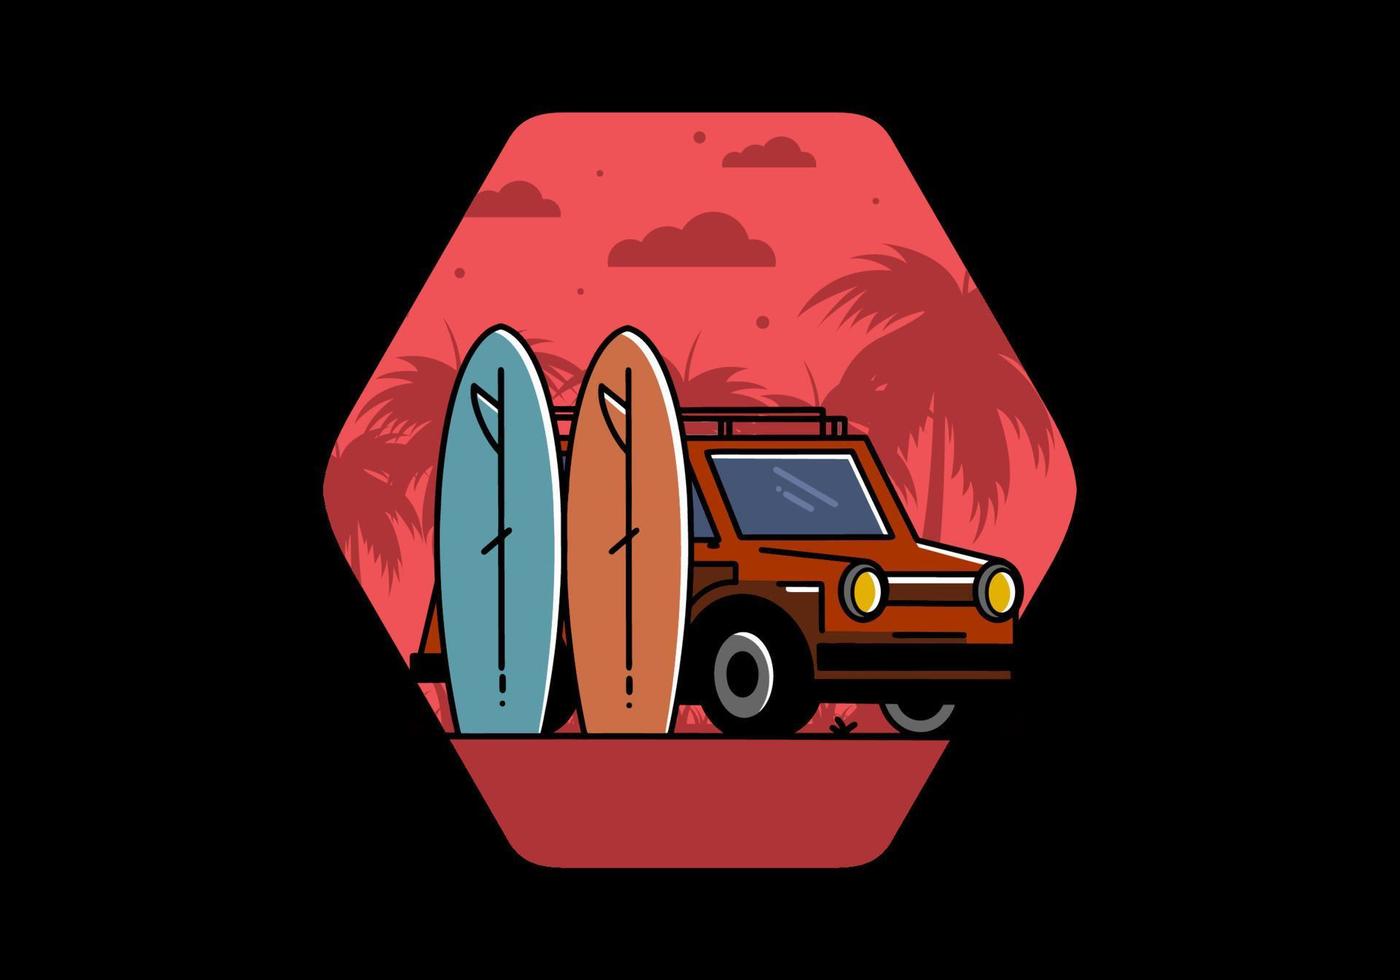 petite voiture et illustration de deux planches de surf vecteur